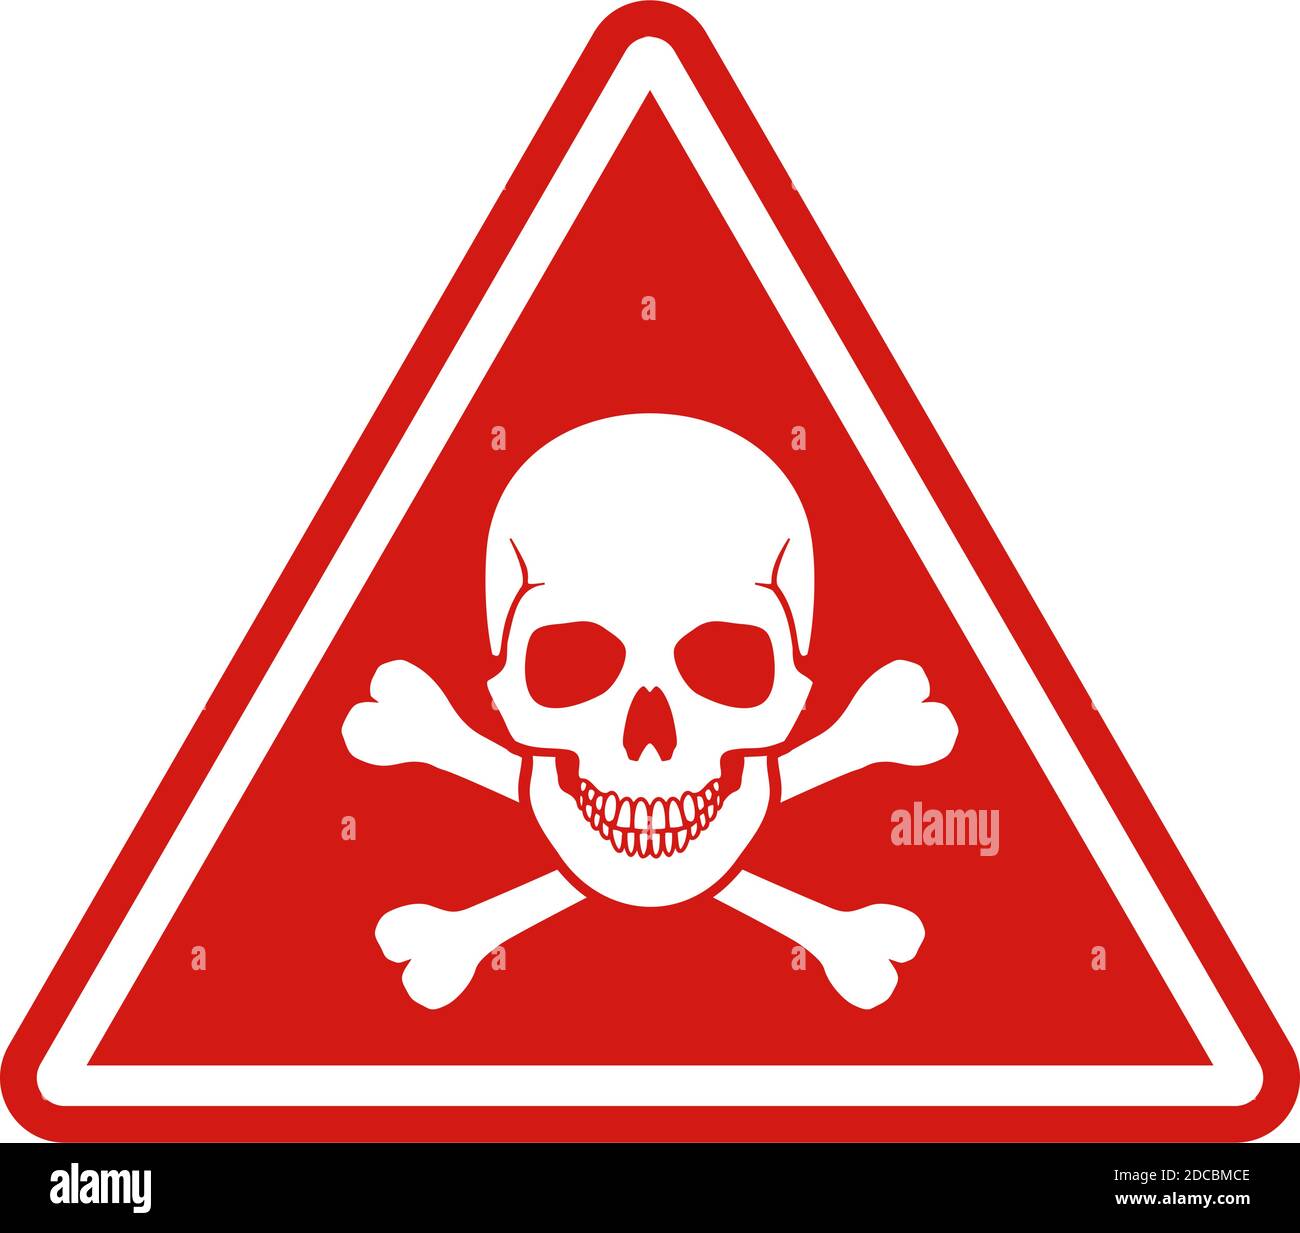 Panneau rouge d'avertissement ou de danger avec crâne et crossones avec illustration vectorielle à cadre blanc Illustration de Vecteur